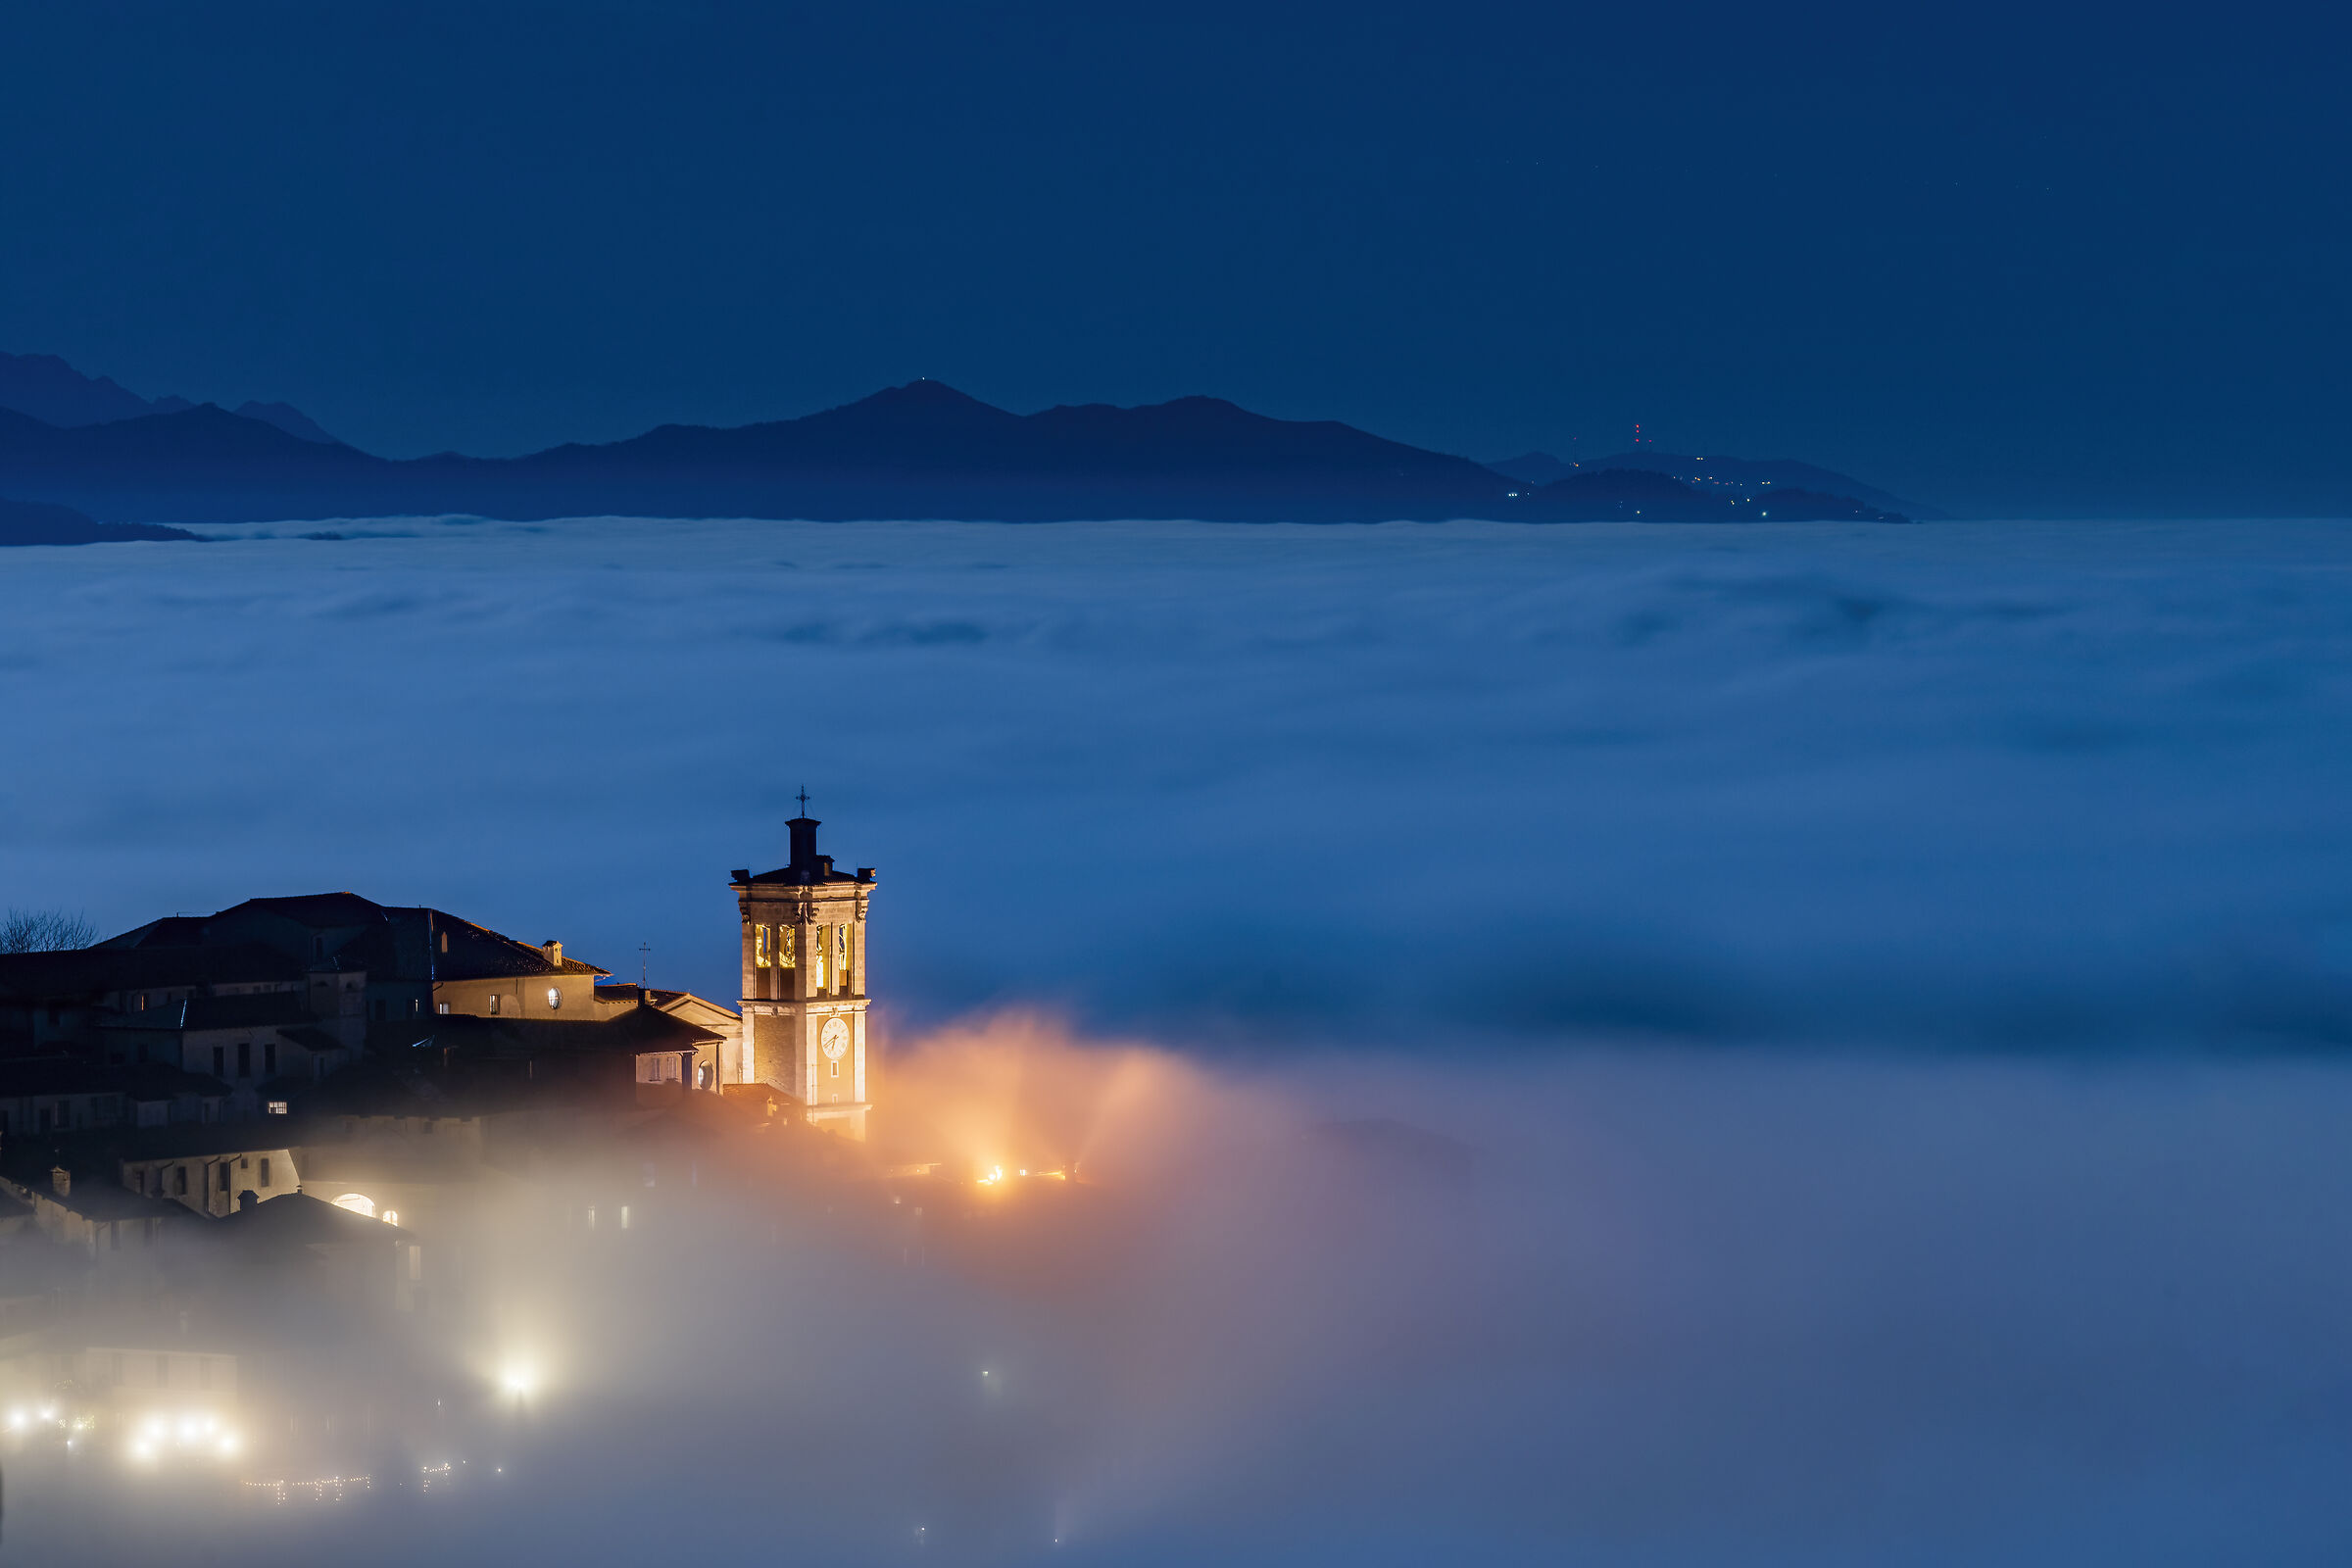 Il Sacro Monte immerso nelle nuvole...